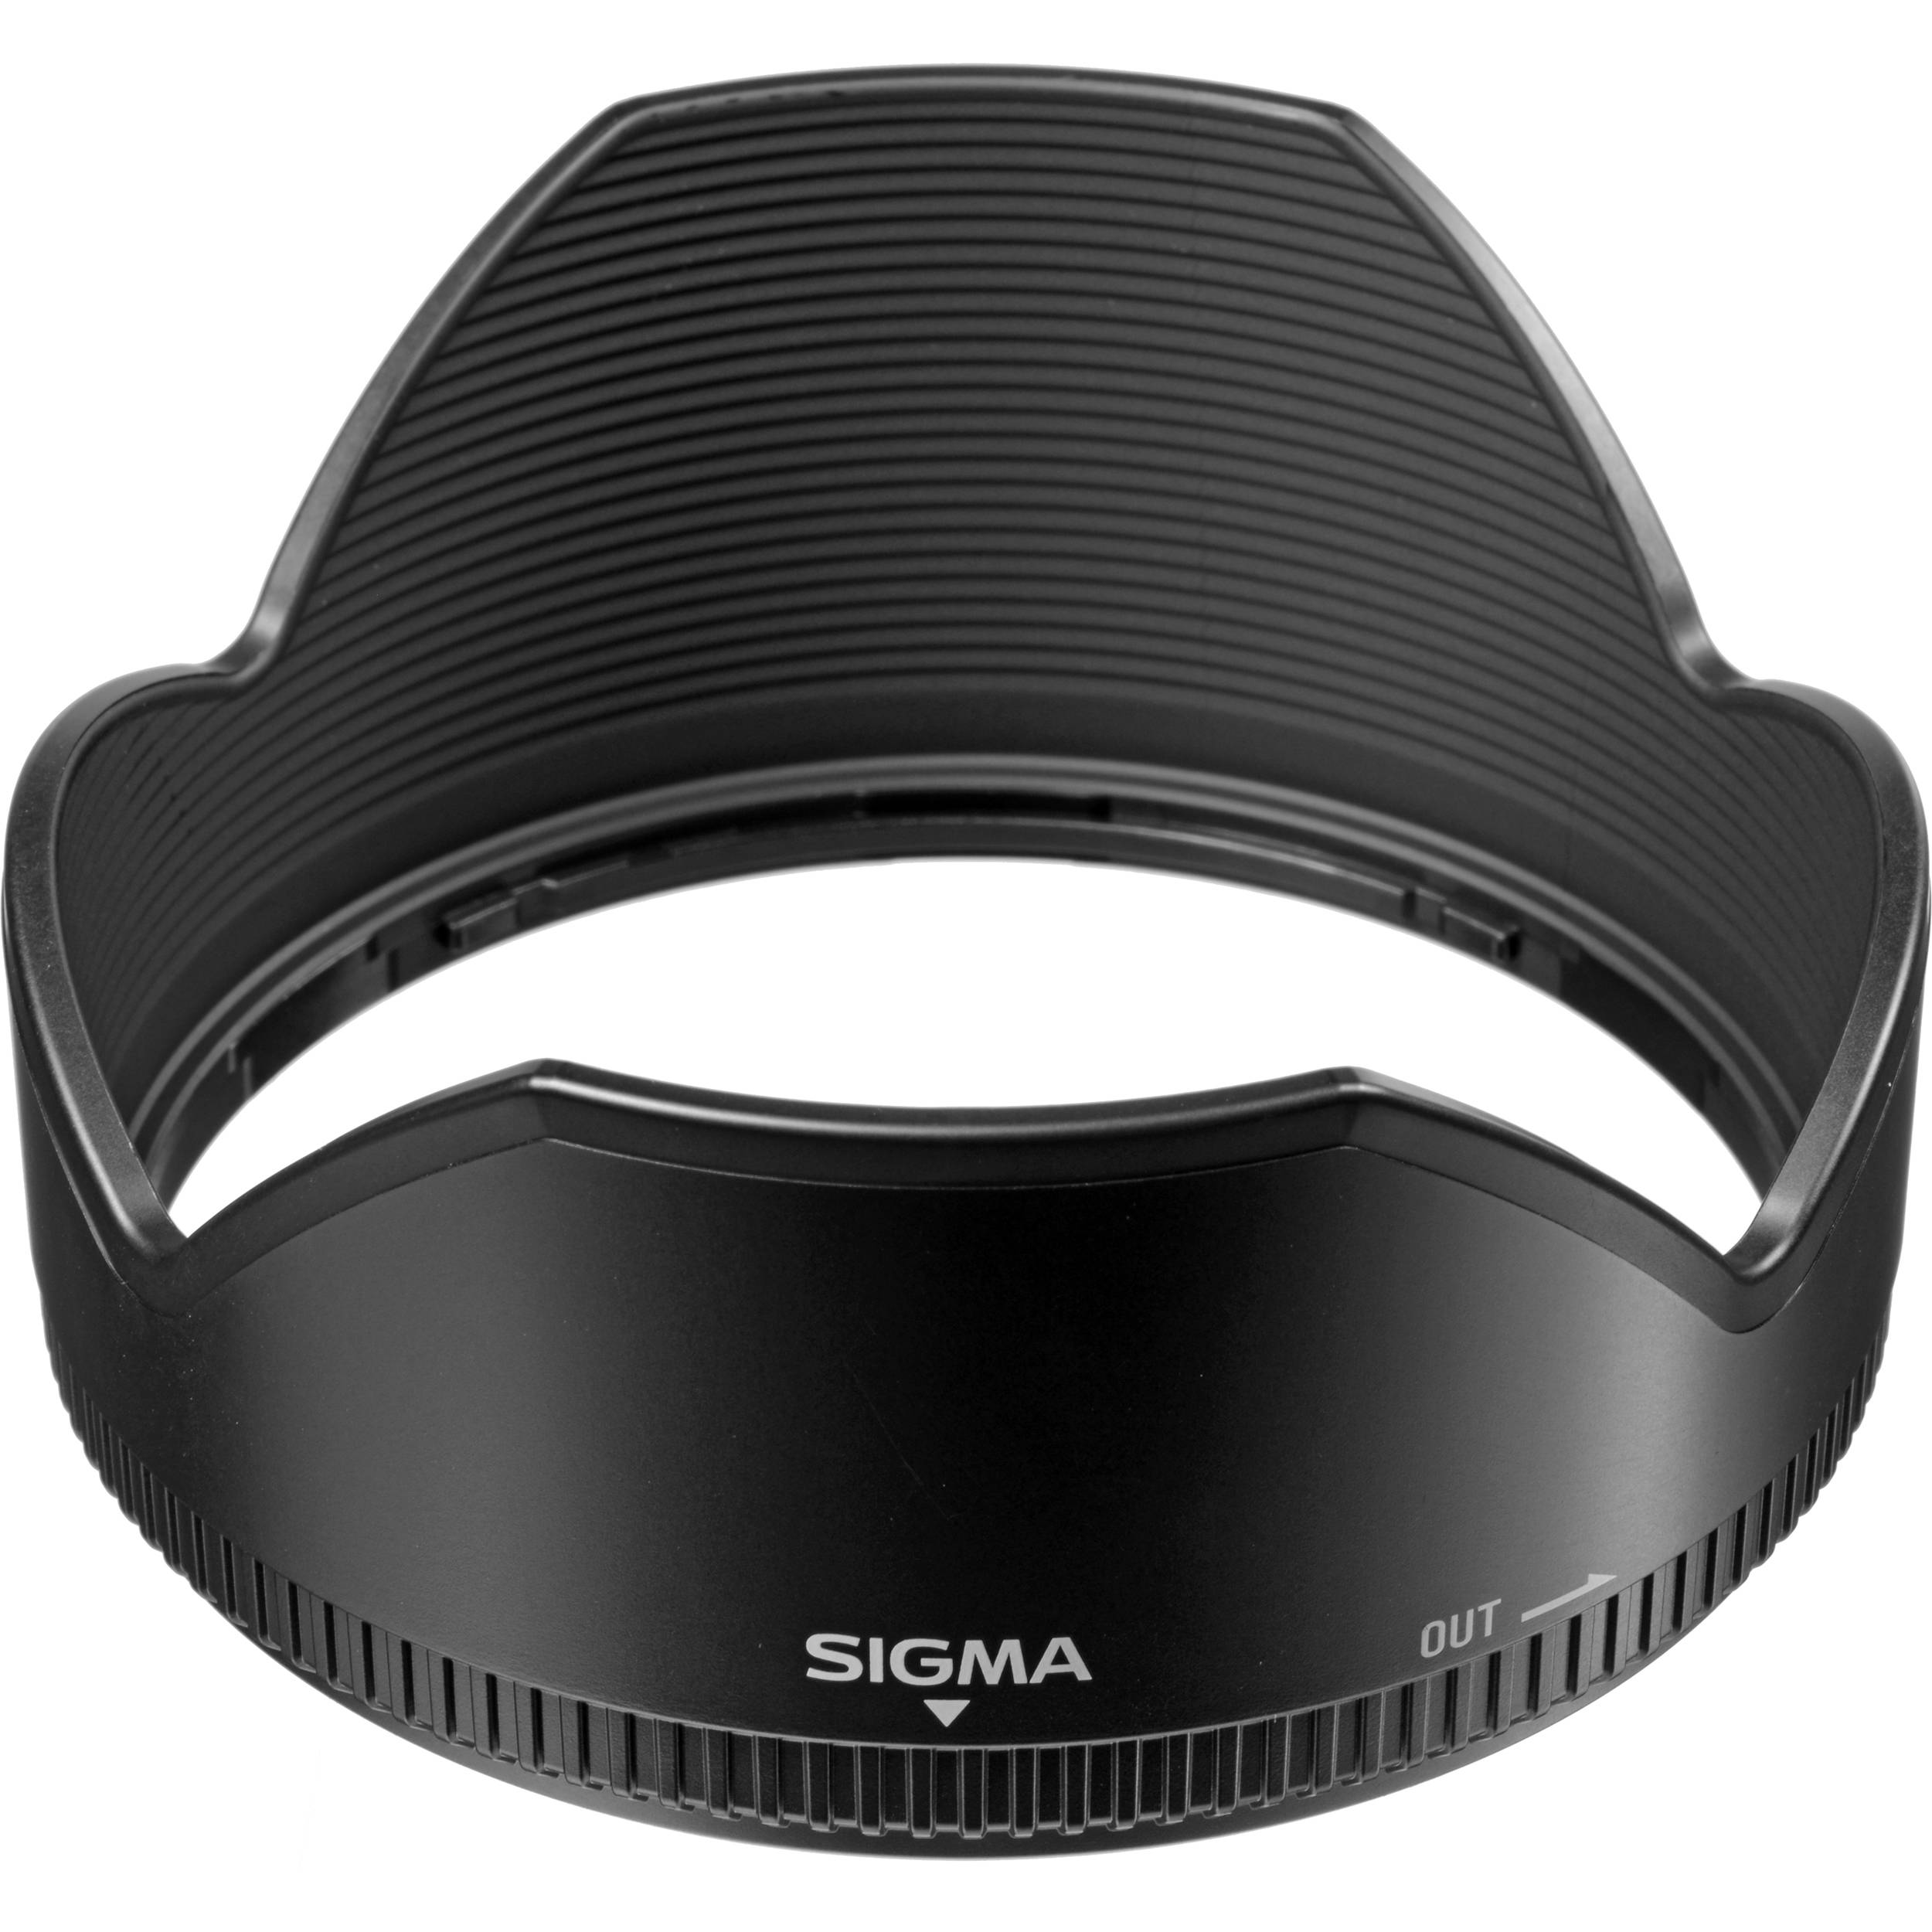 Sigma Lens Hood For 10 mm F 4 5 6 Ex Dc Hsm Lens Lh5 04 B H